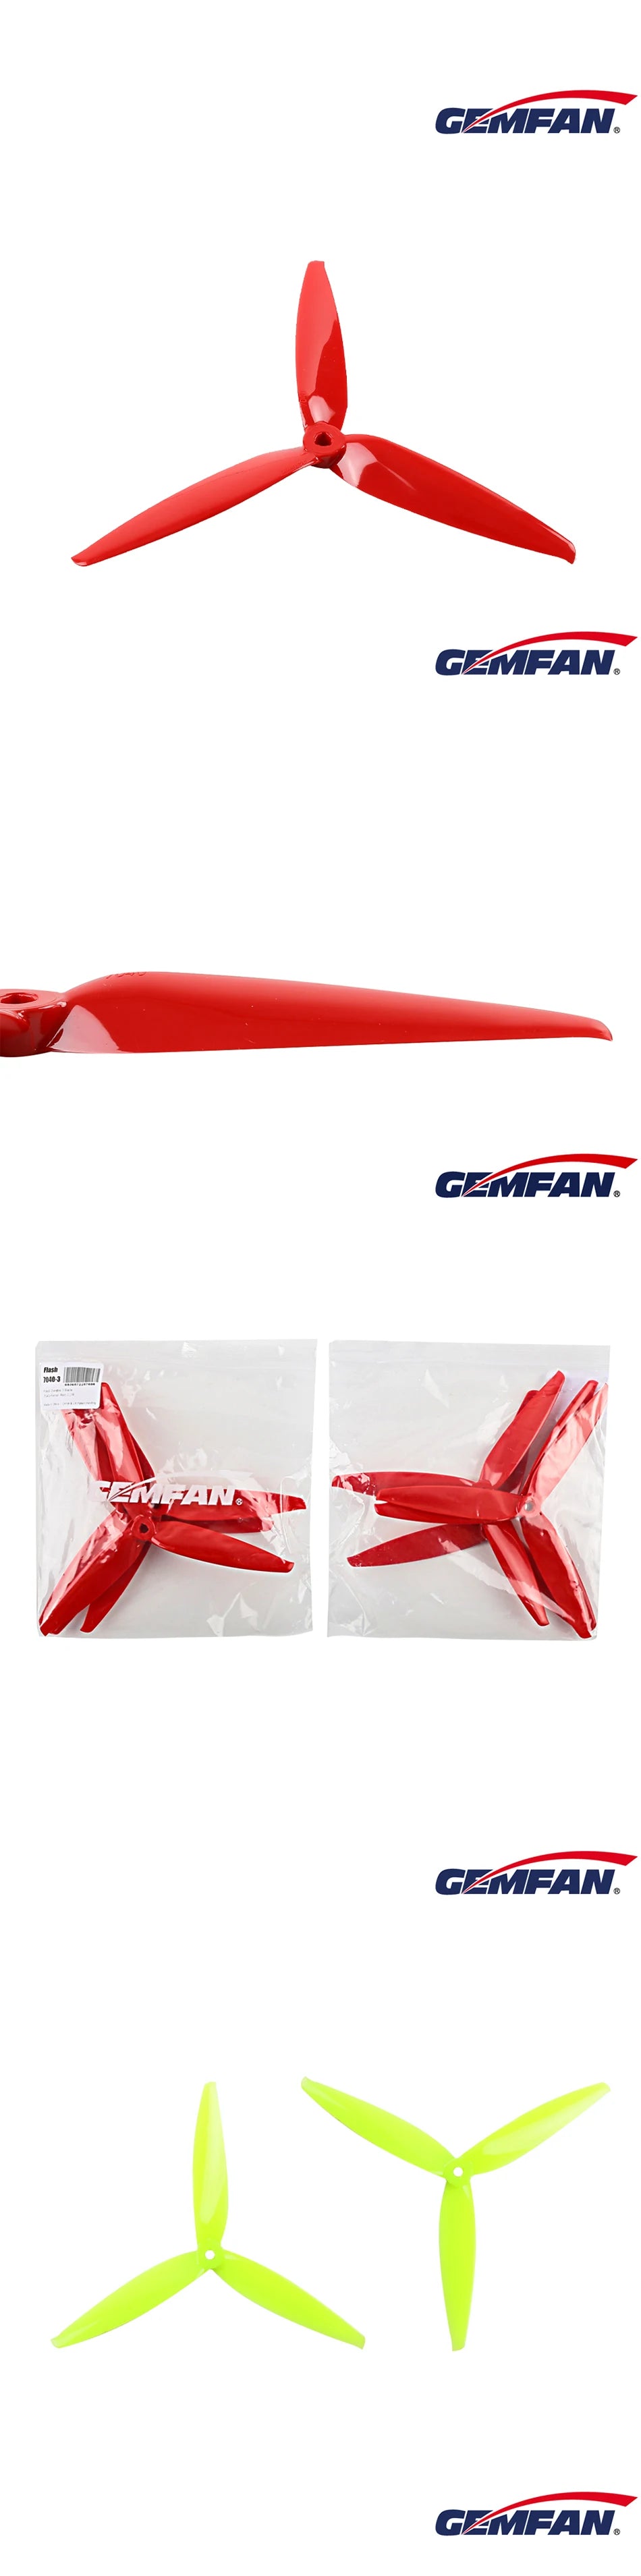 2/6/12Pairs Gemfan Flash 7040 Propeller, GMFAN: GZMFAN GMFANS MLiALE